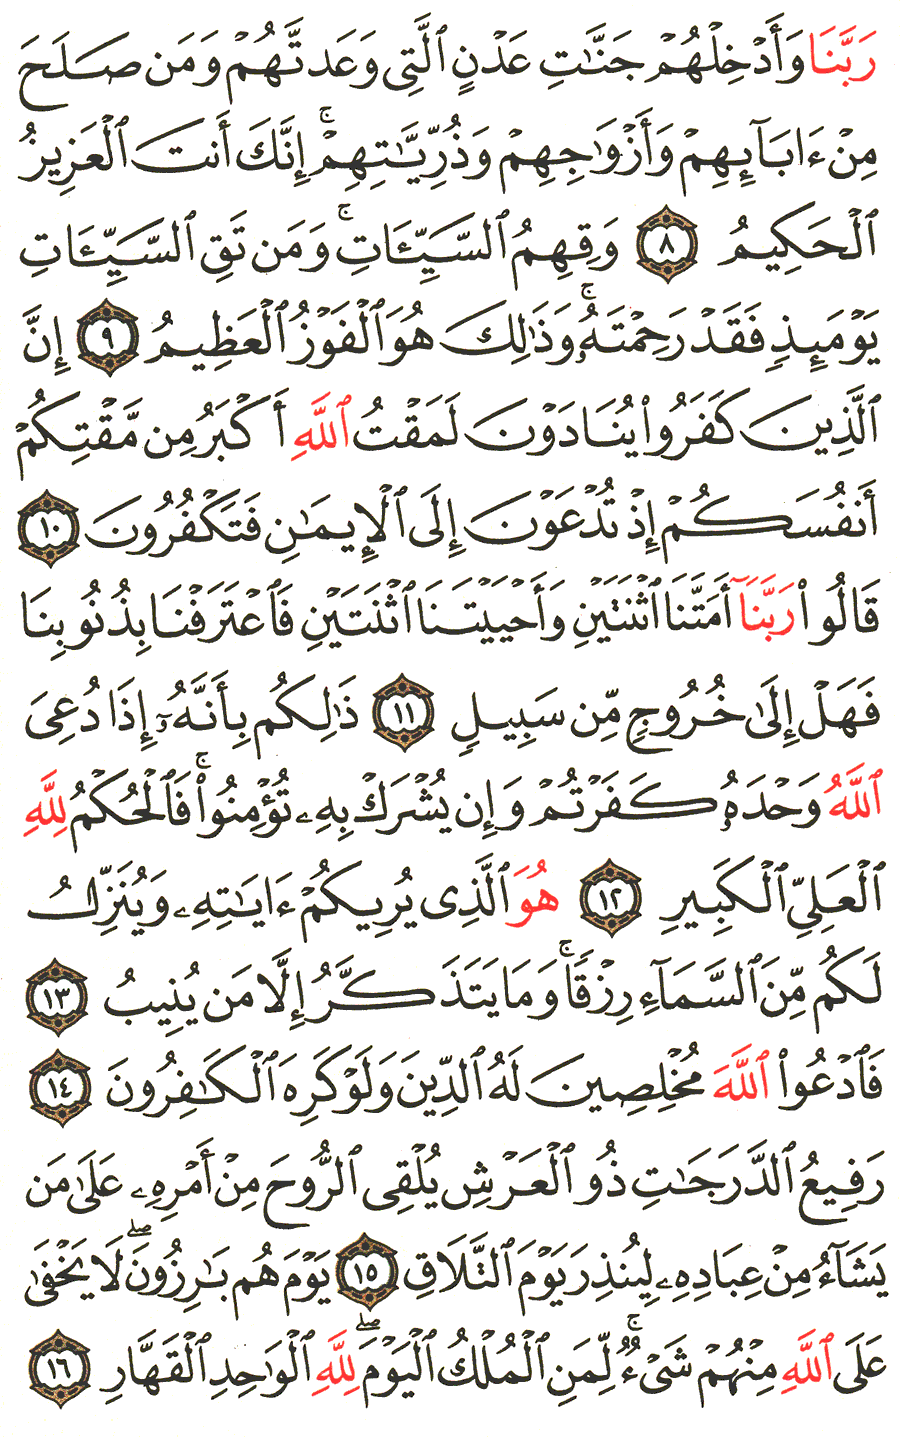 الصفحة 468 من القرآن الكريم